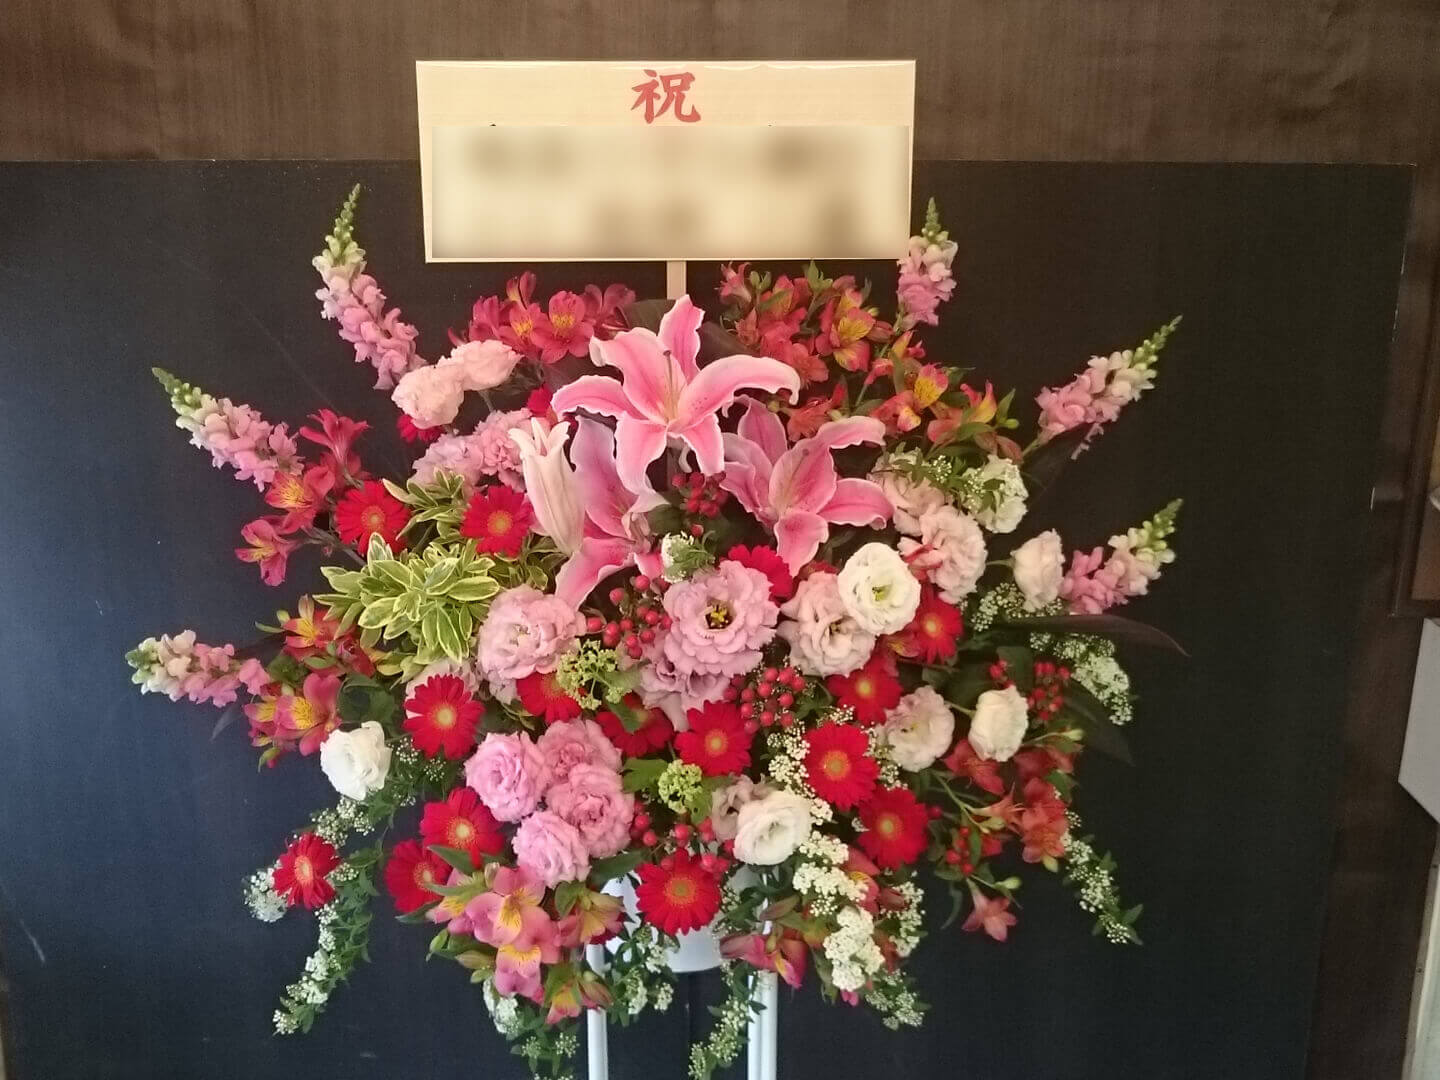 練馬 練月舘 中平文庫様の開所祝いピンク系スタンド花